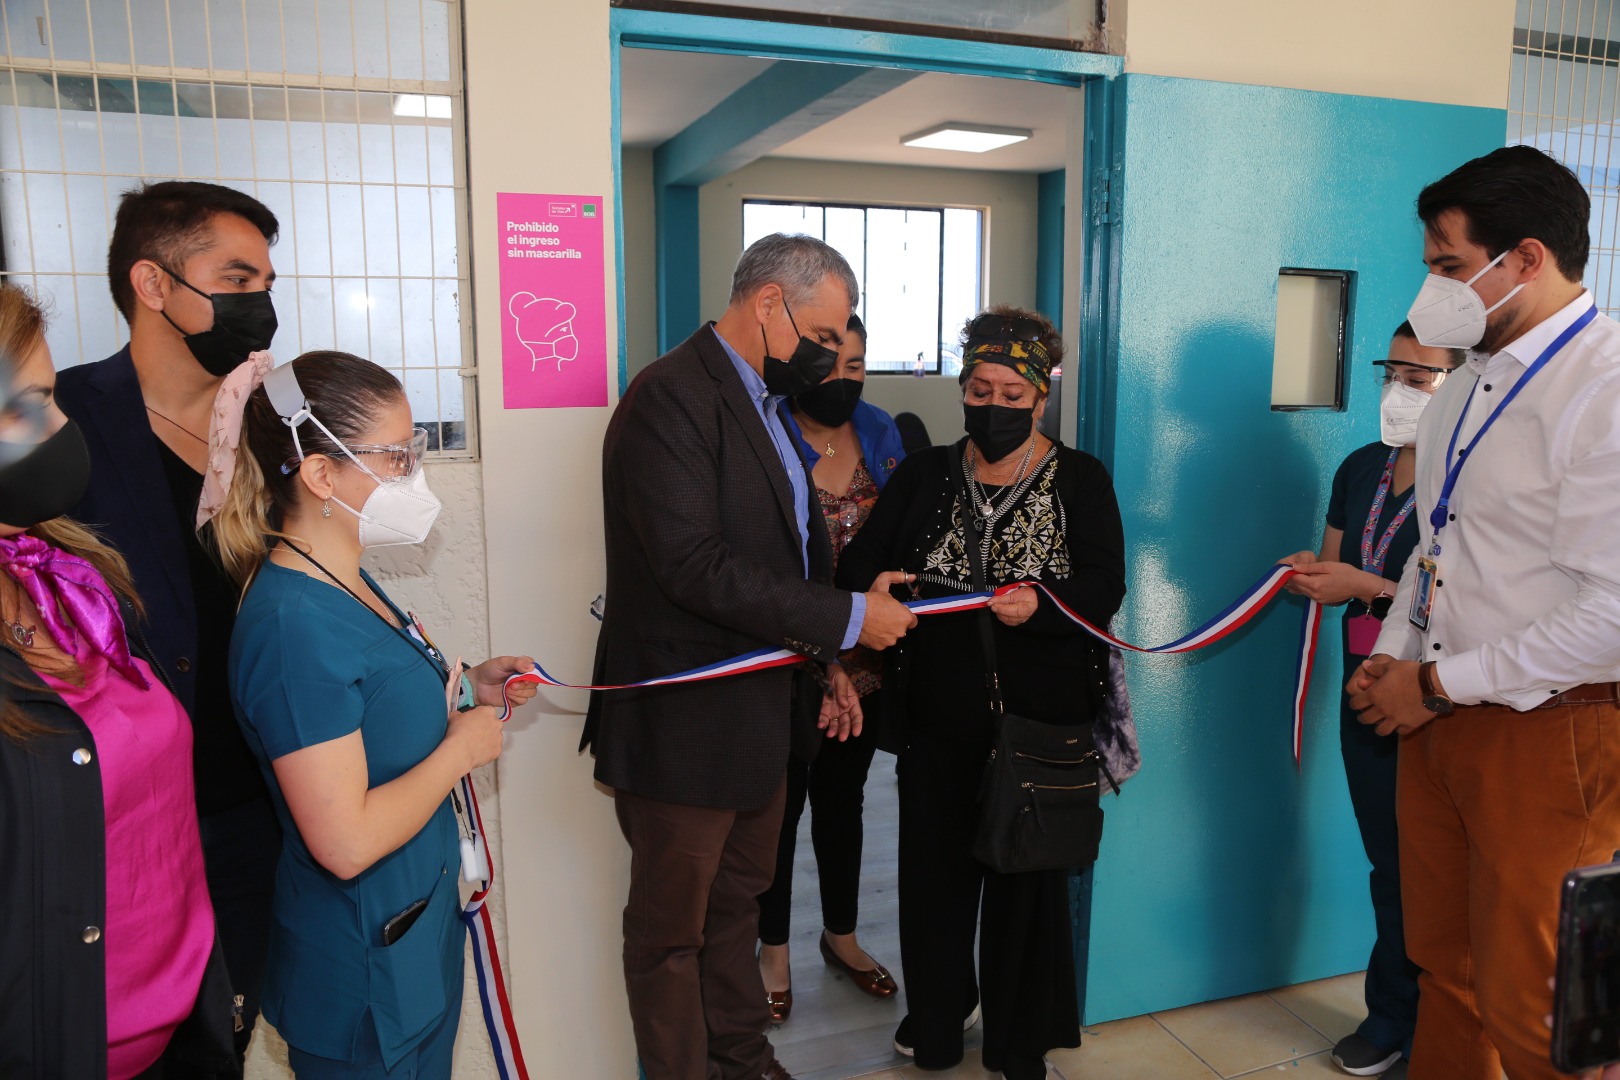 Salud Municipal de Iquique inaugura unidad de rehabilitación cardiopulmonar post Covid-19